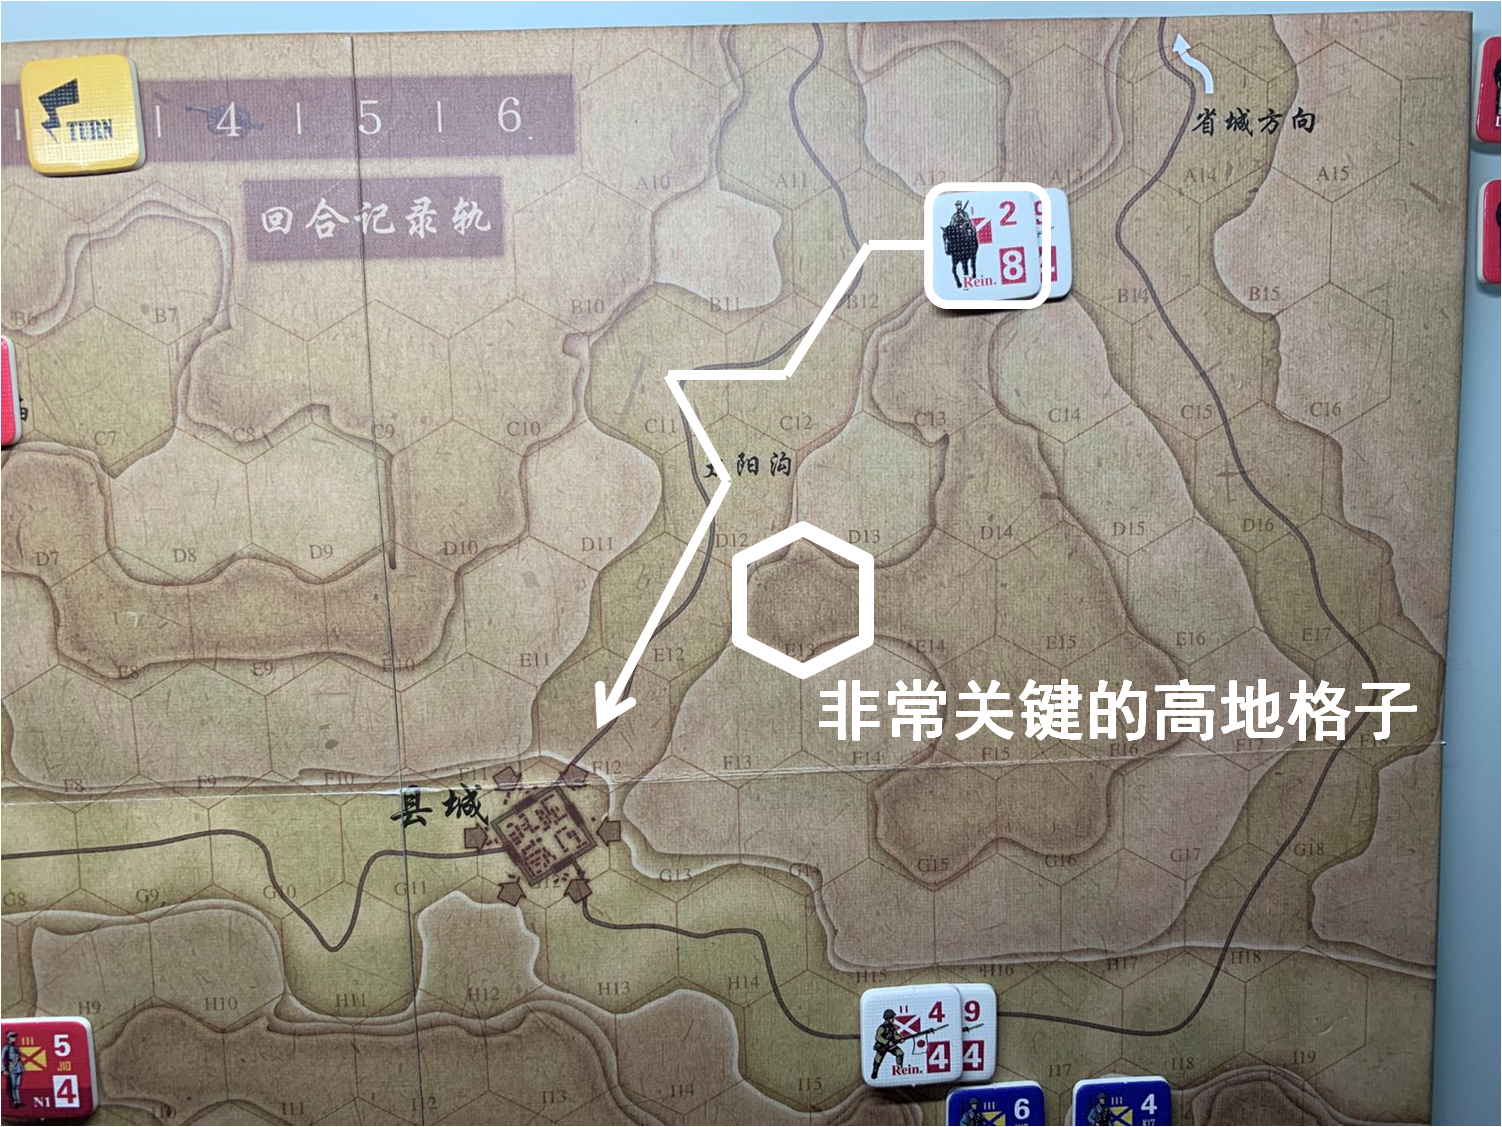 第三回合省城方向日軍增援部隊（B13）對於移動命令3的執行計劃論證2